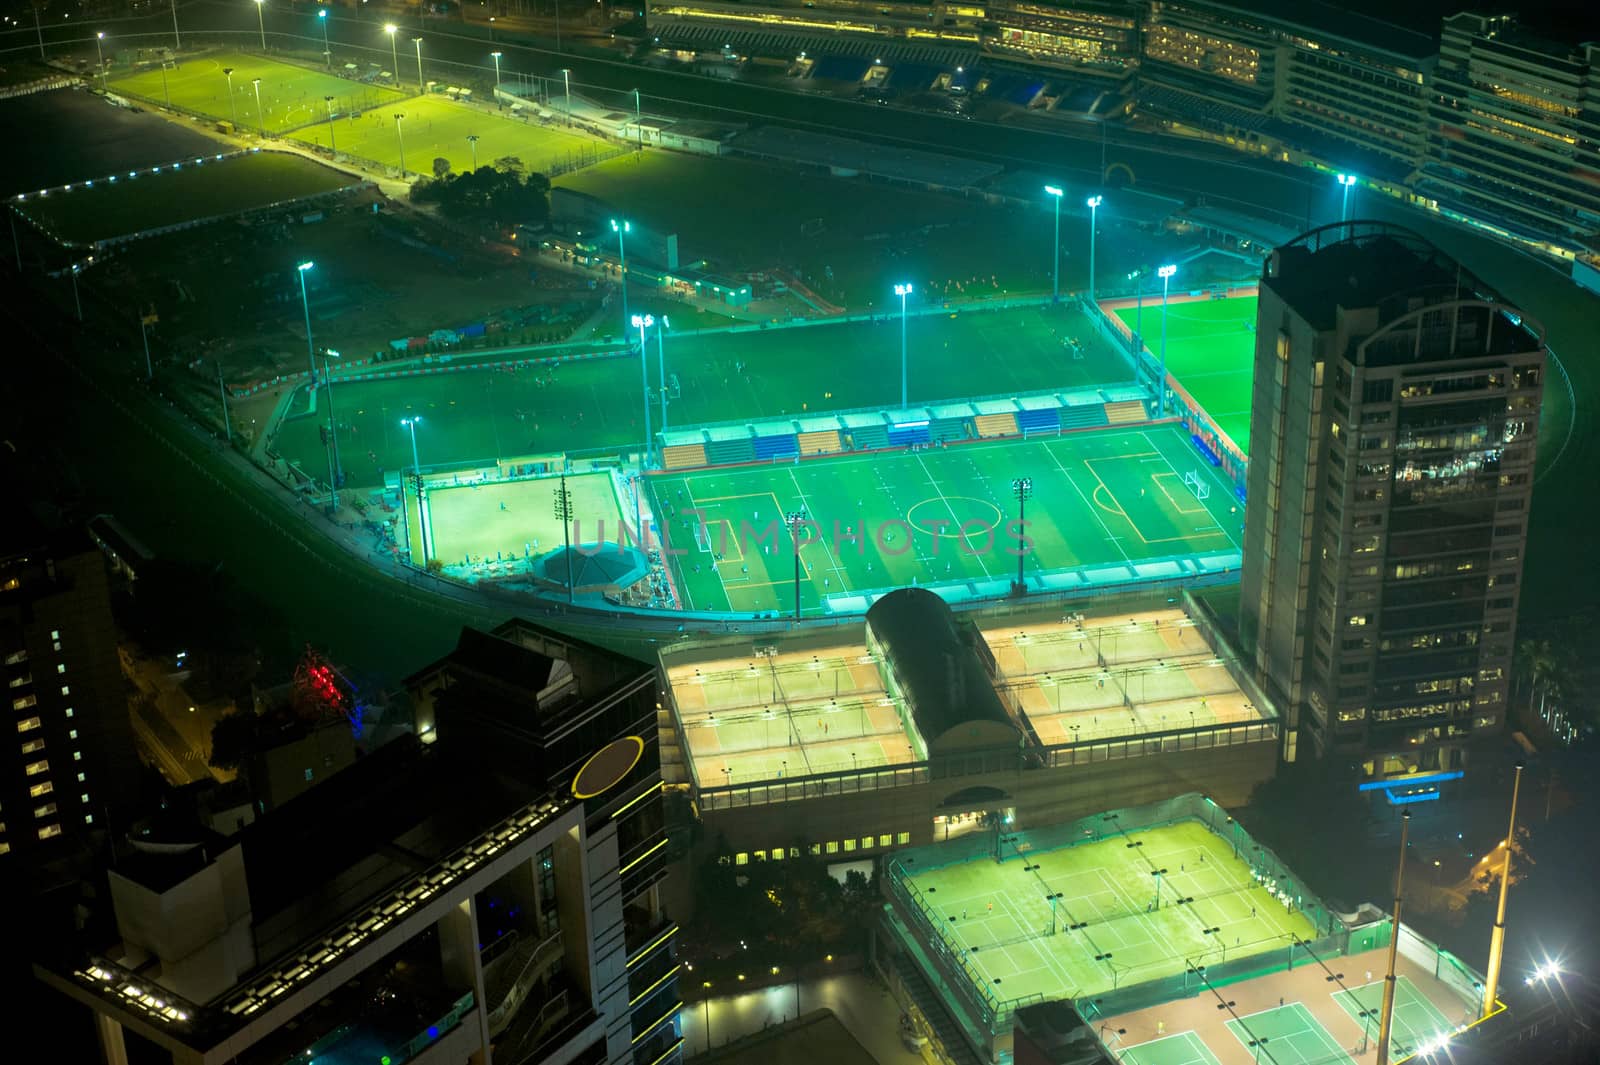 Hong Kong  sport district by joyfull